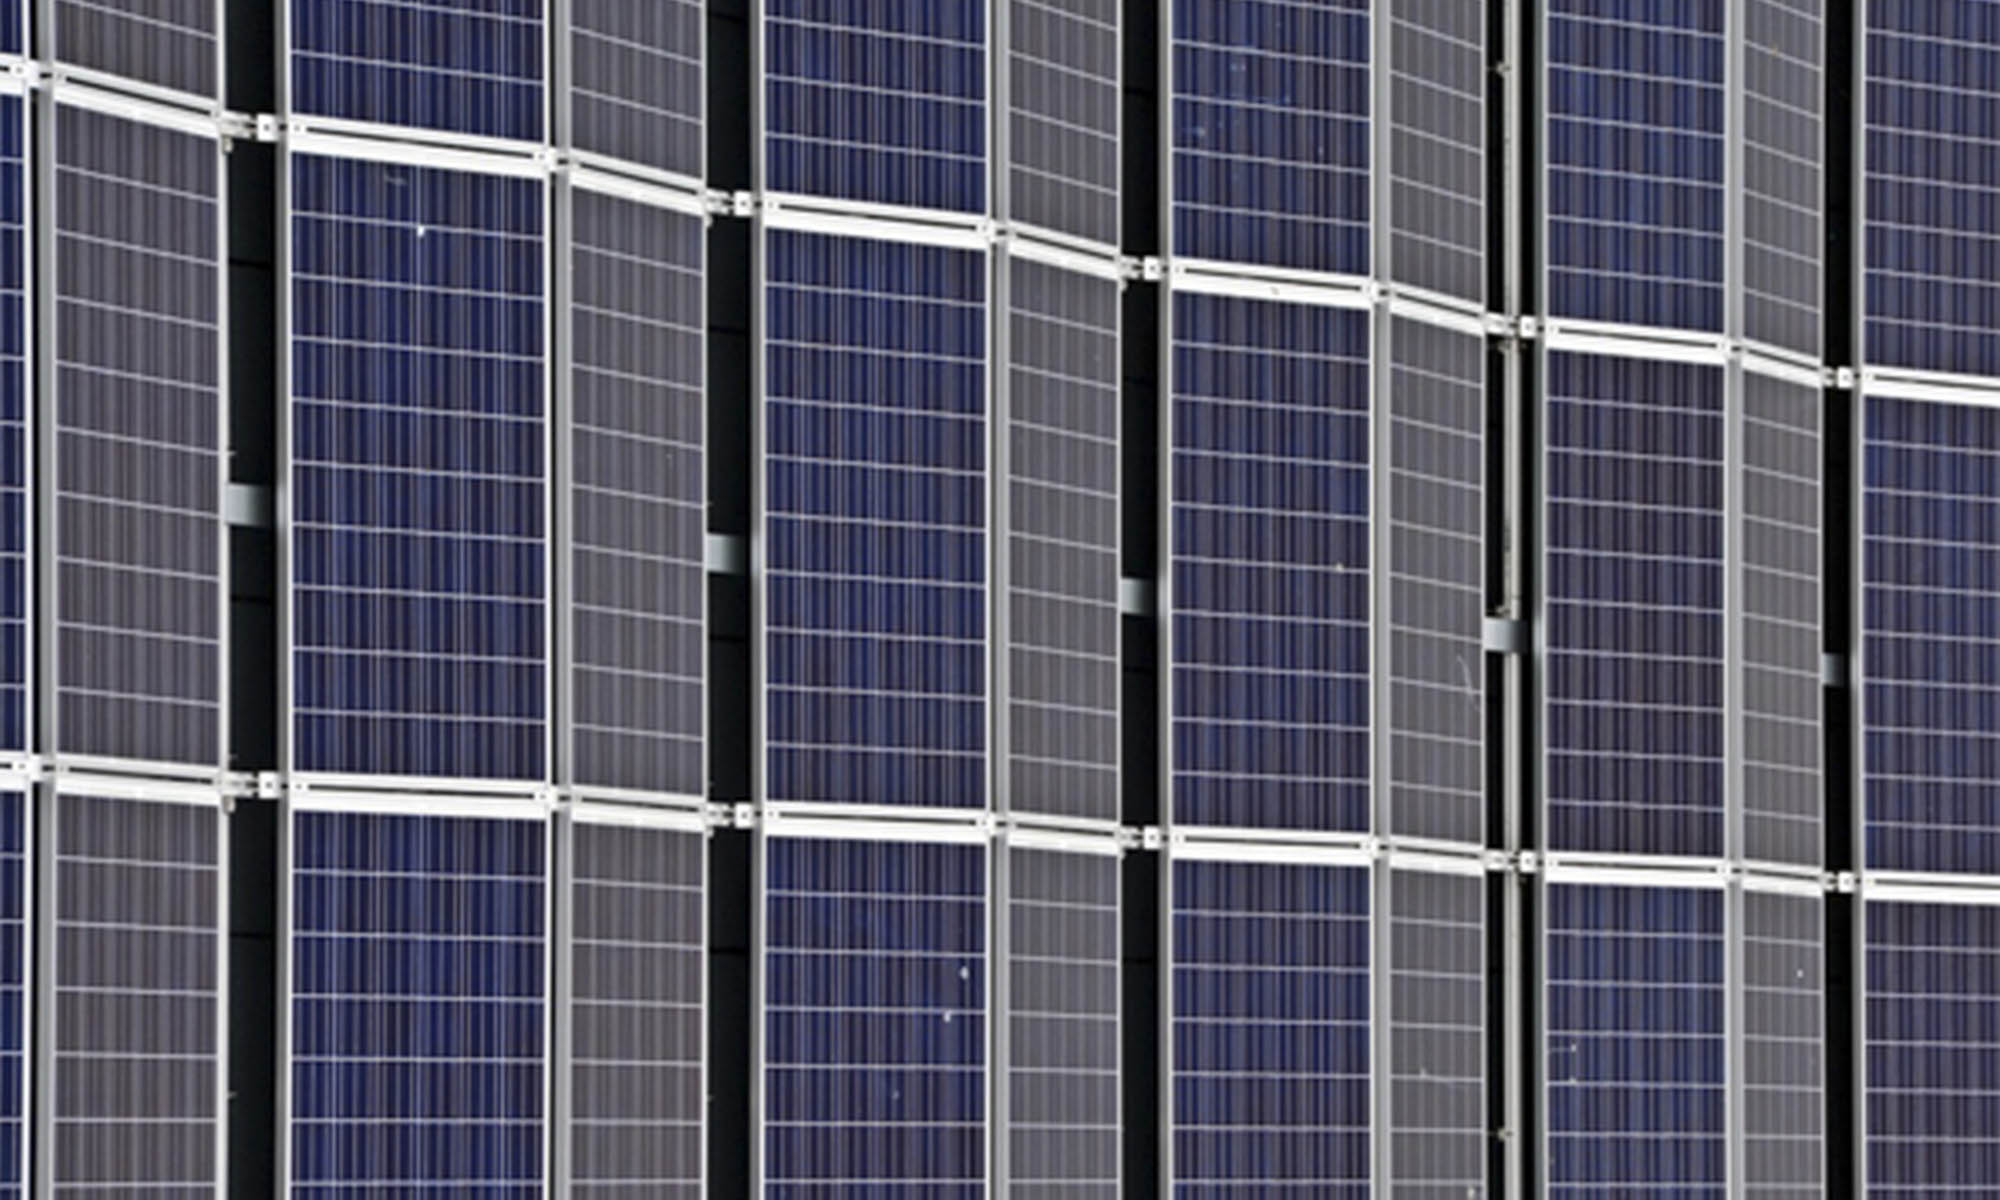 Los paneles solares instalados verticalmente operan de la misma manera técnica que aquellos colocados en posición horizontal.